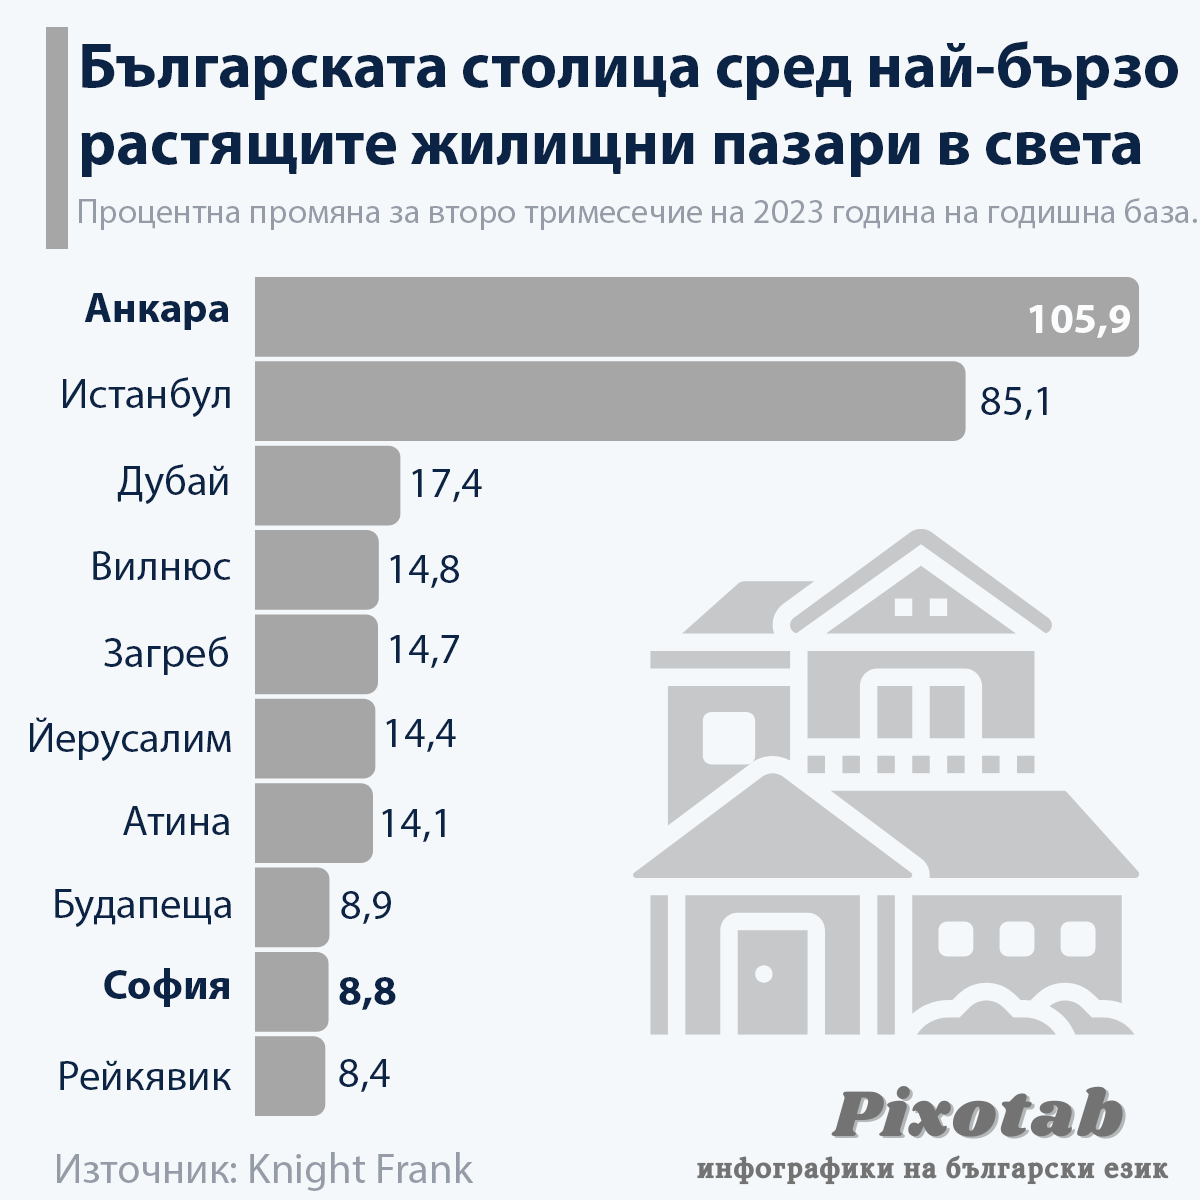 Българската столица сред най-бързо растящите жилищни пазари в света